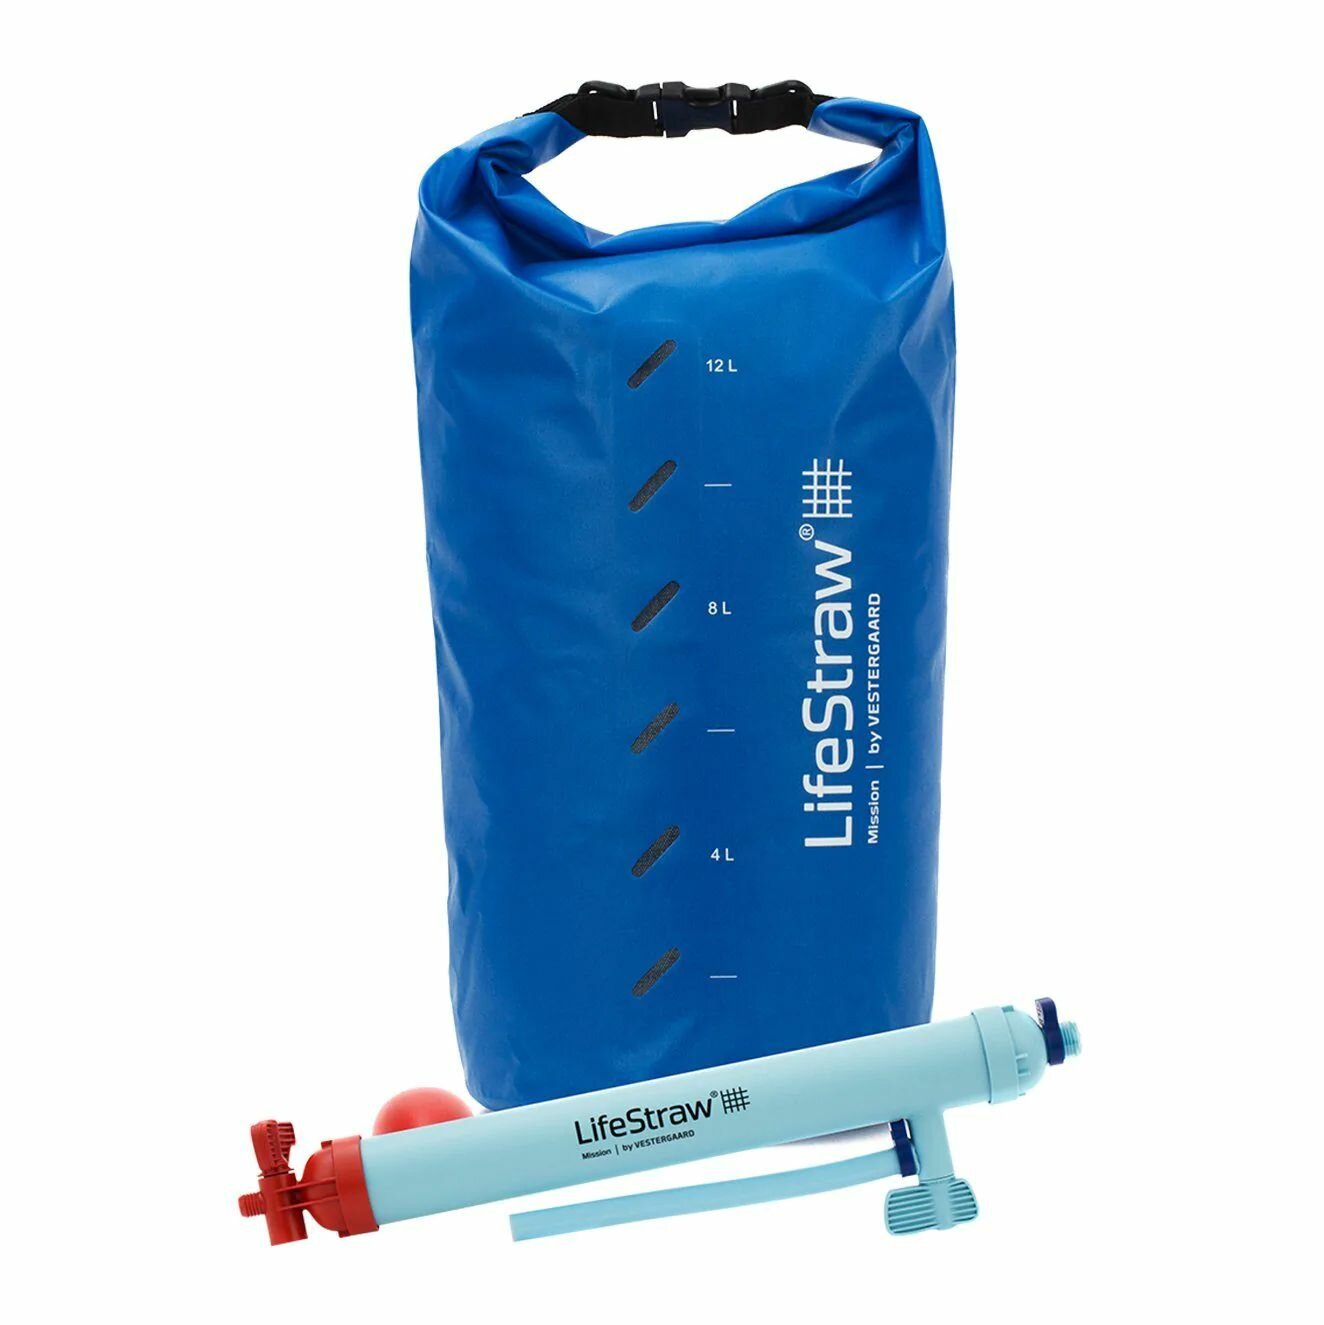 LifeStraw peak Series mission система гравитационной фильтрации на 12 л./фильтр для воды/водоочищение